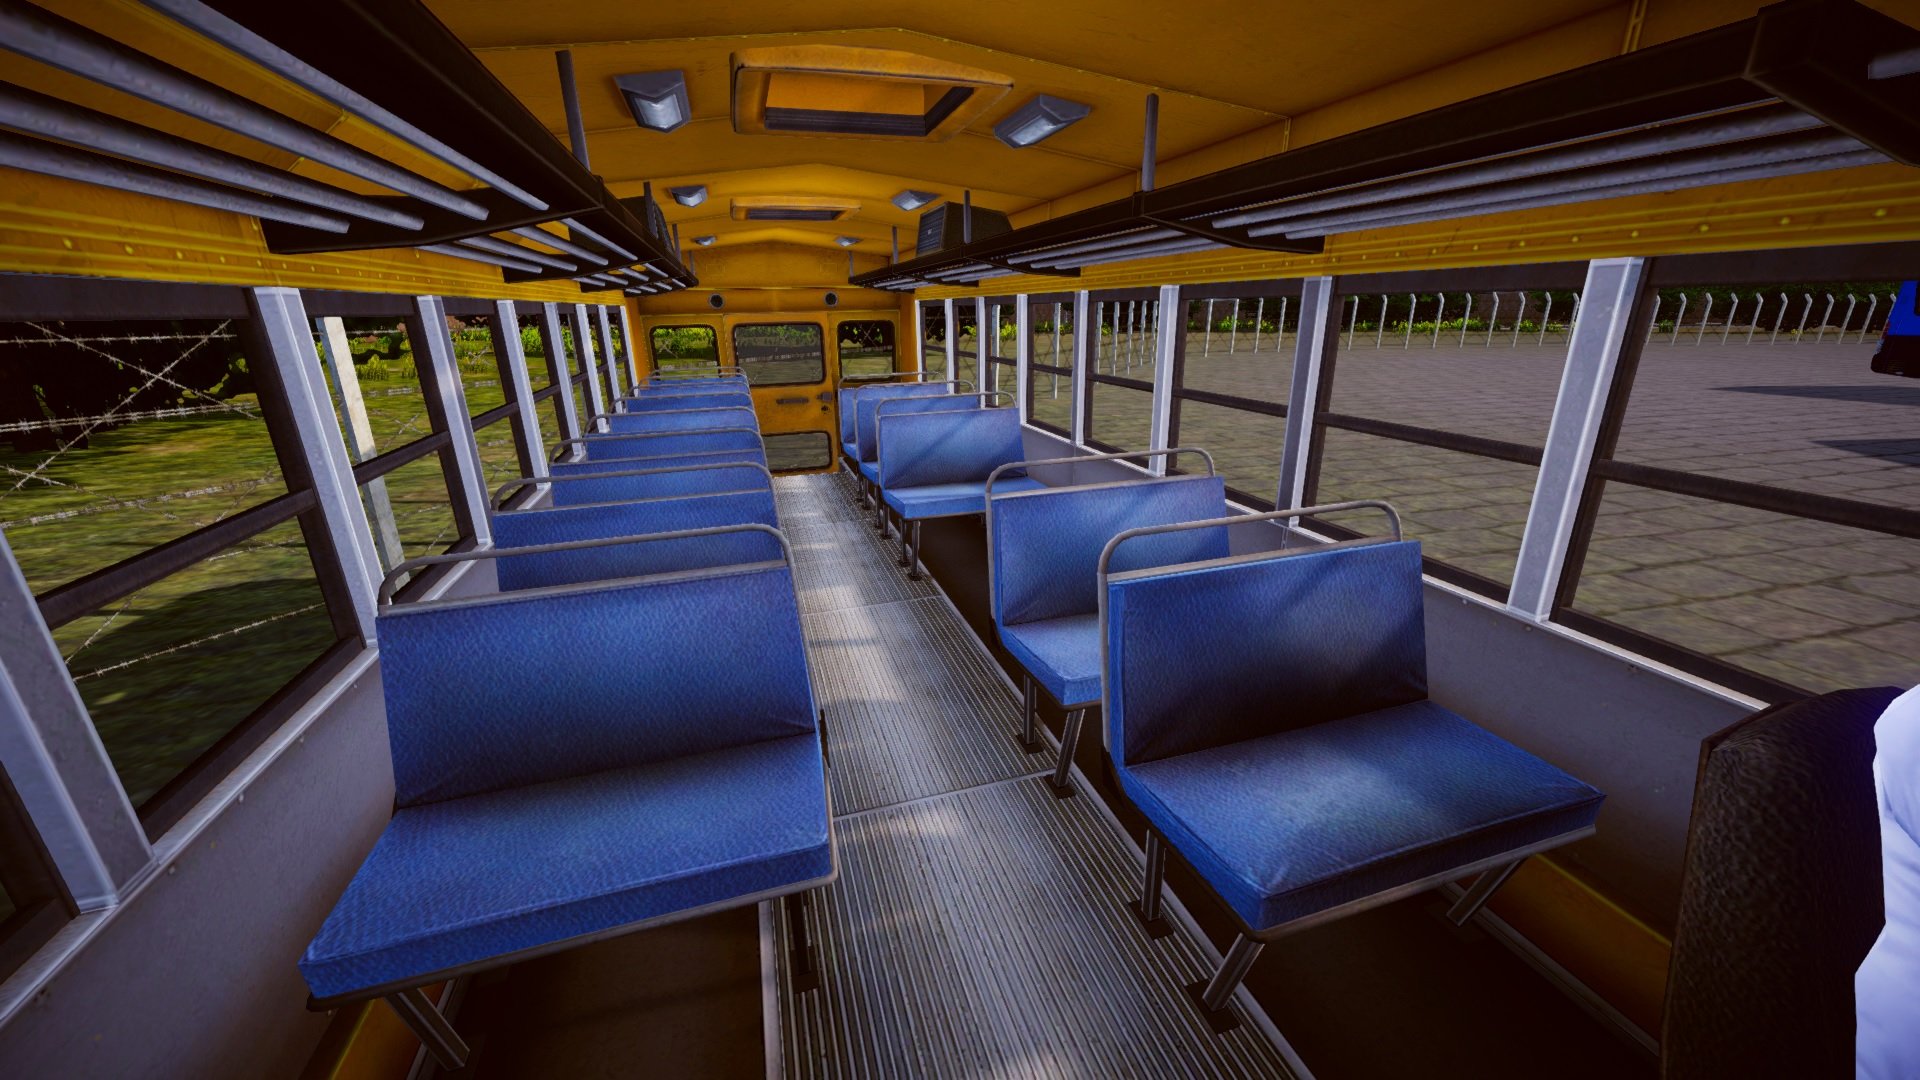 Ônibus Escolar Americano - Proton Bus - Lukas Gameplays